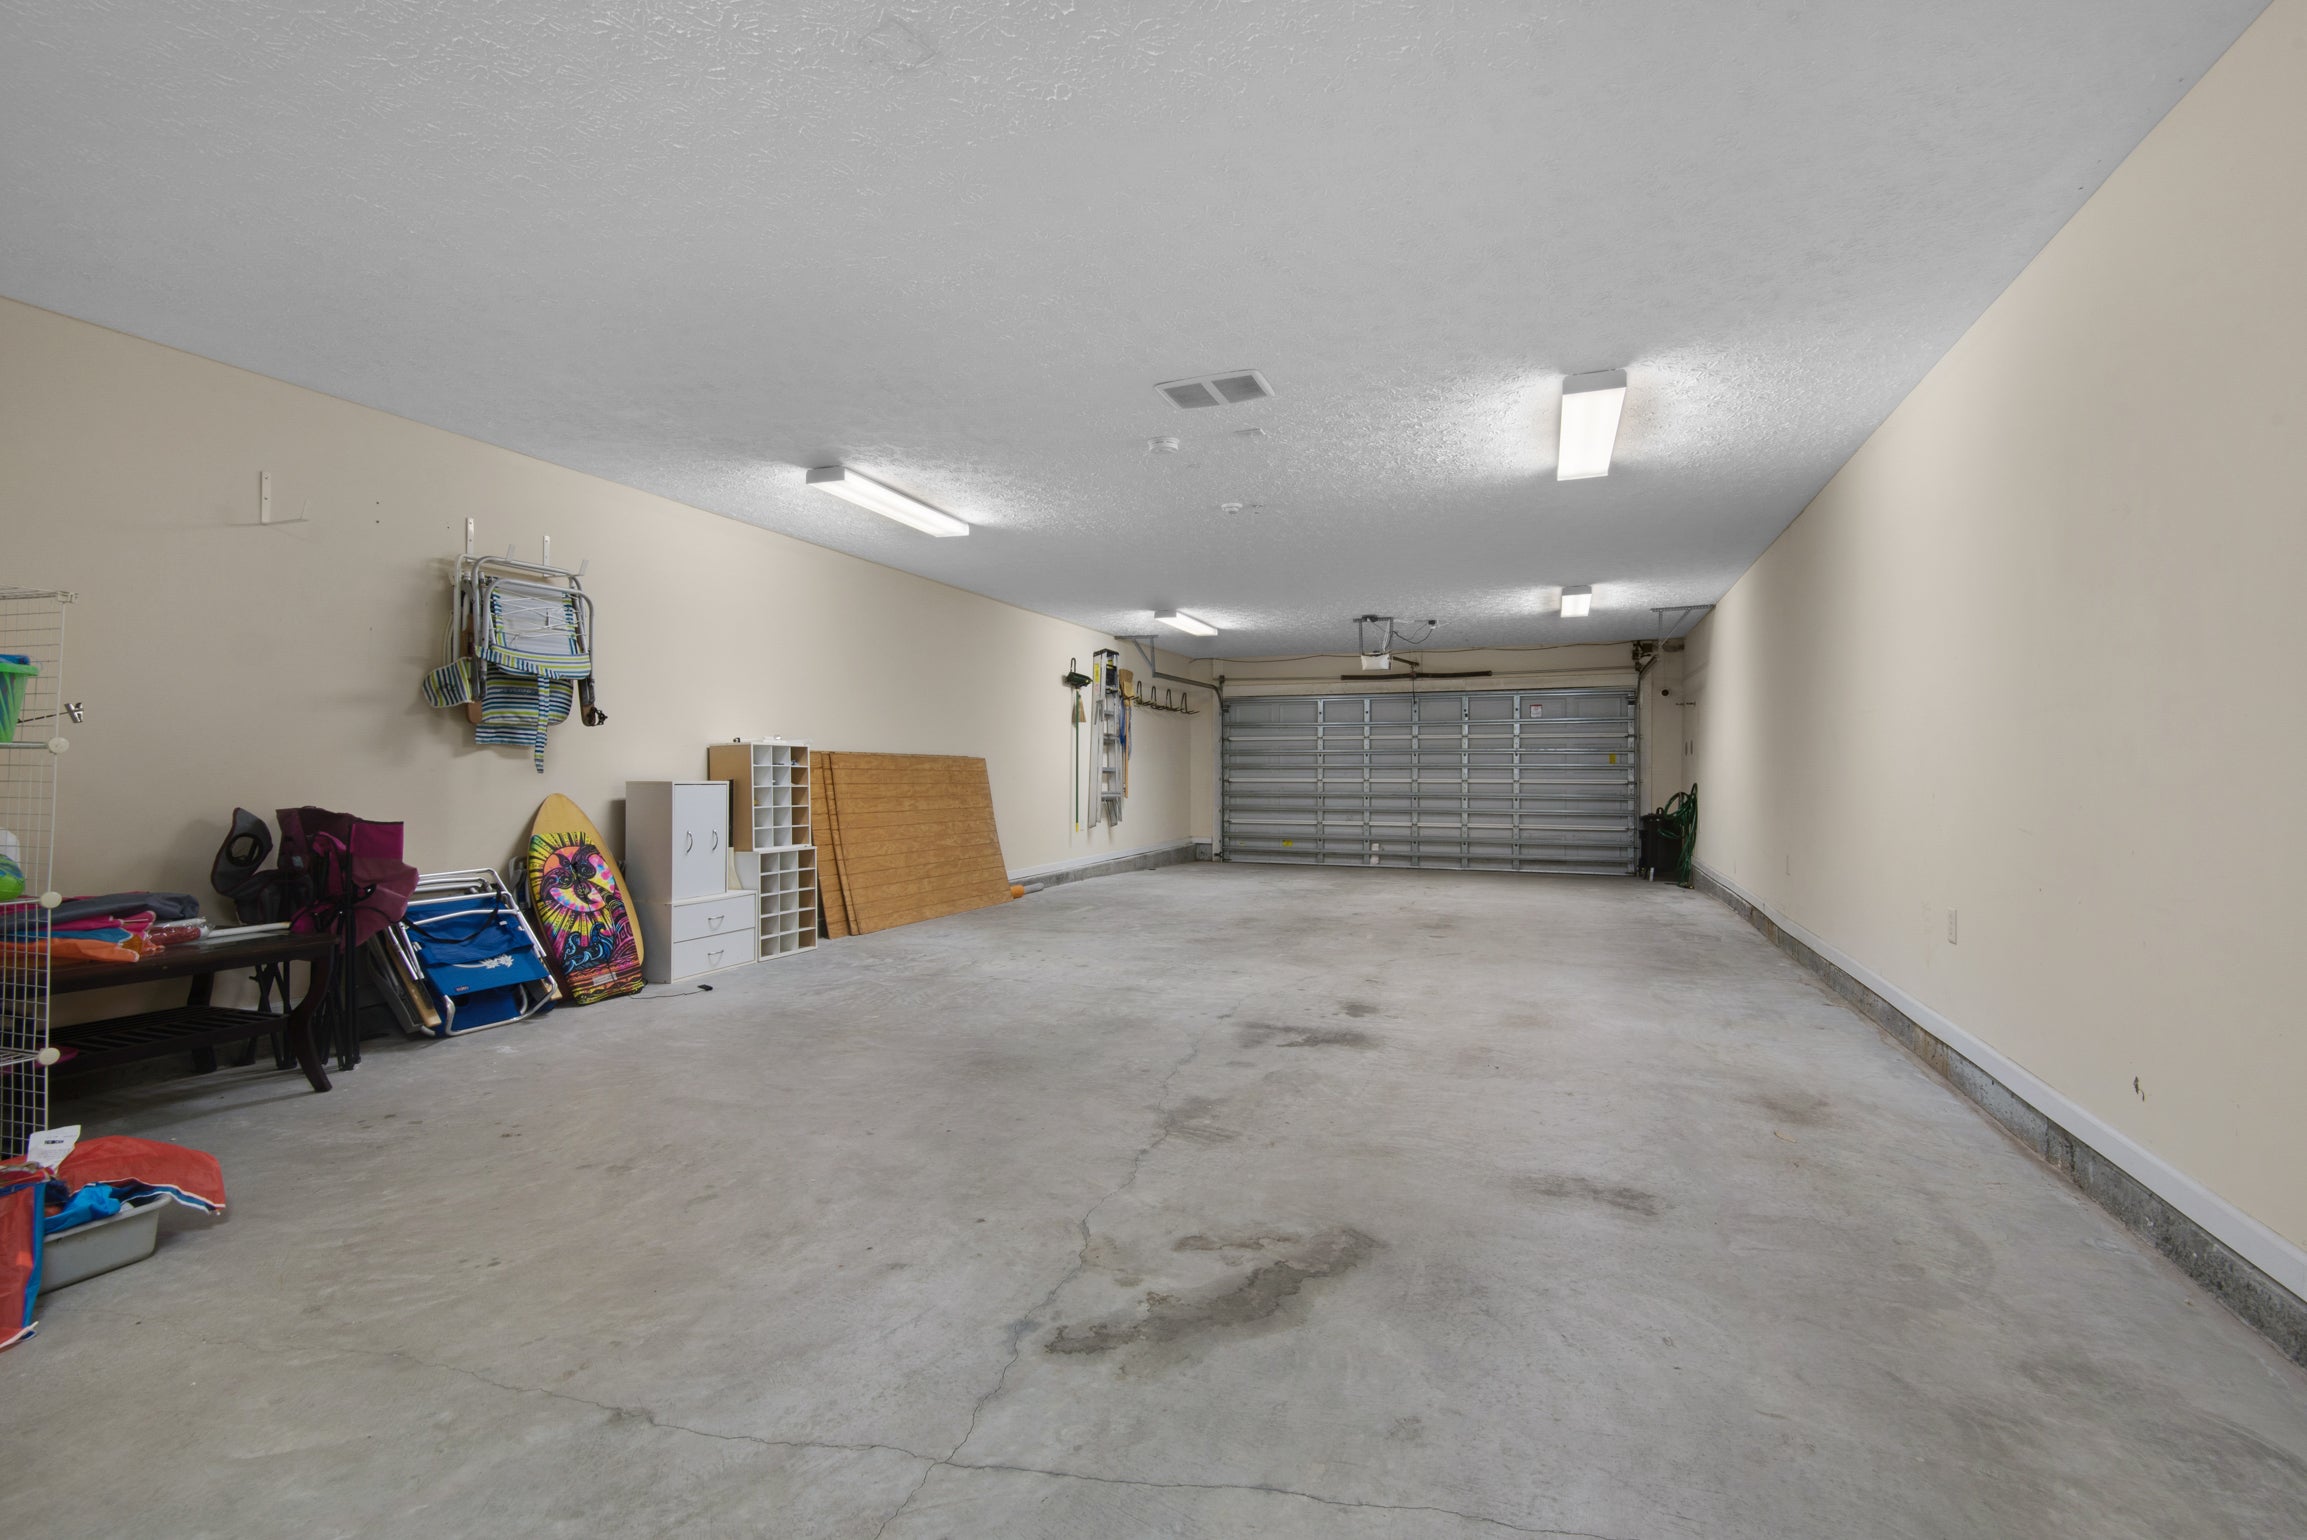 Garage space for storage